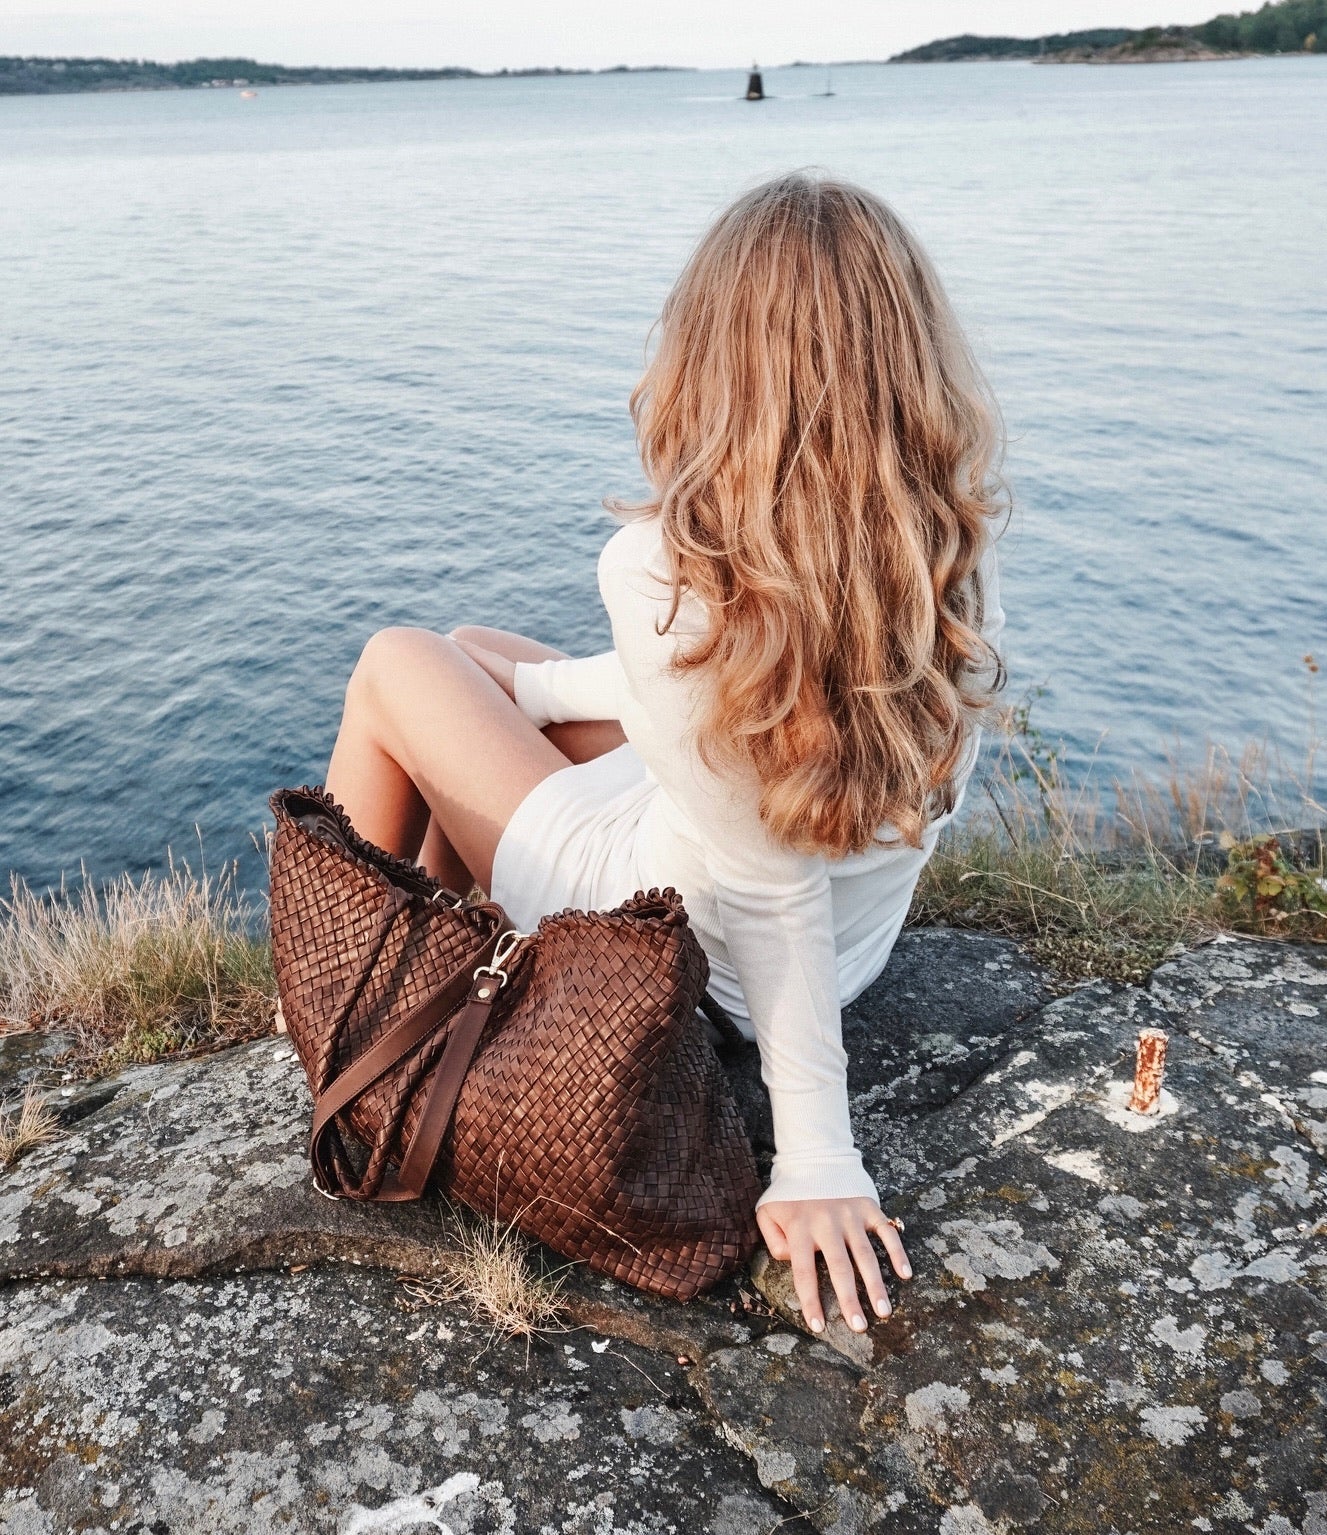 En ung kvinne ser utover havet ved siden av en Woodstock Weekend skinnveske i brun, preget av naturlig eleganse.